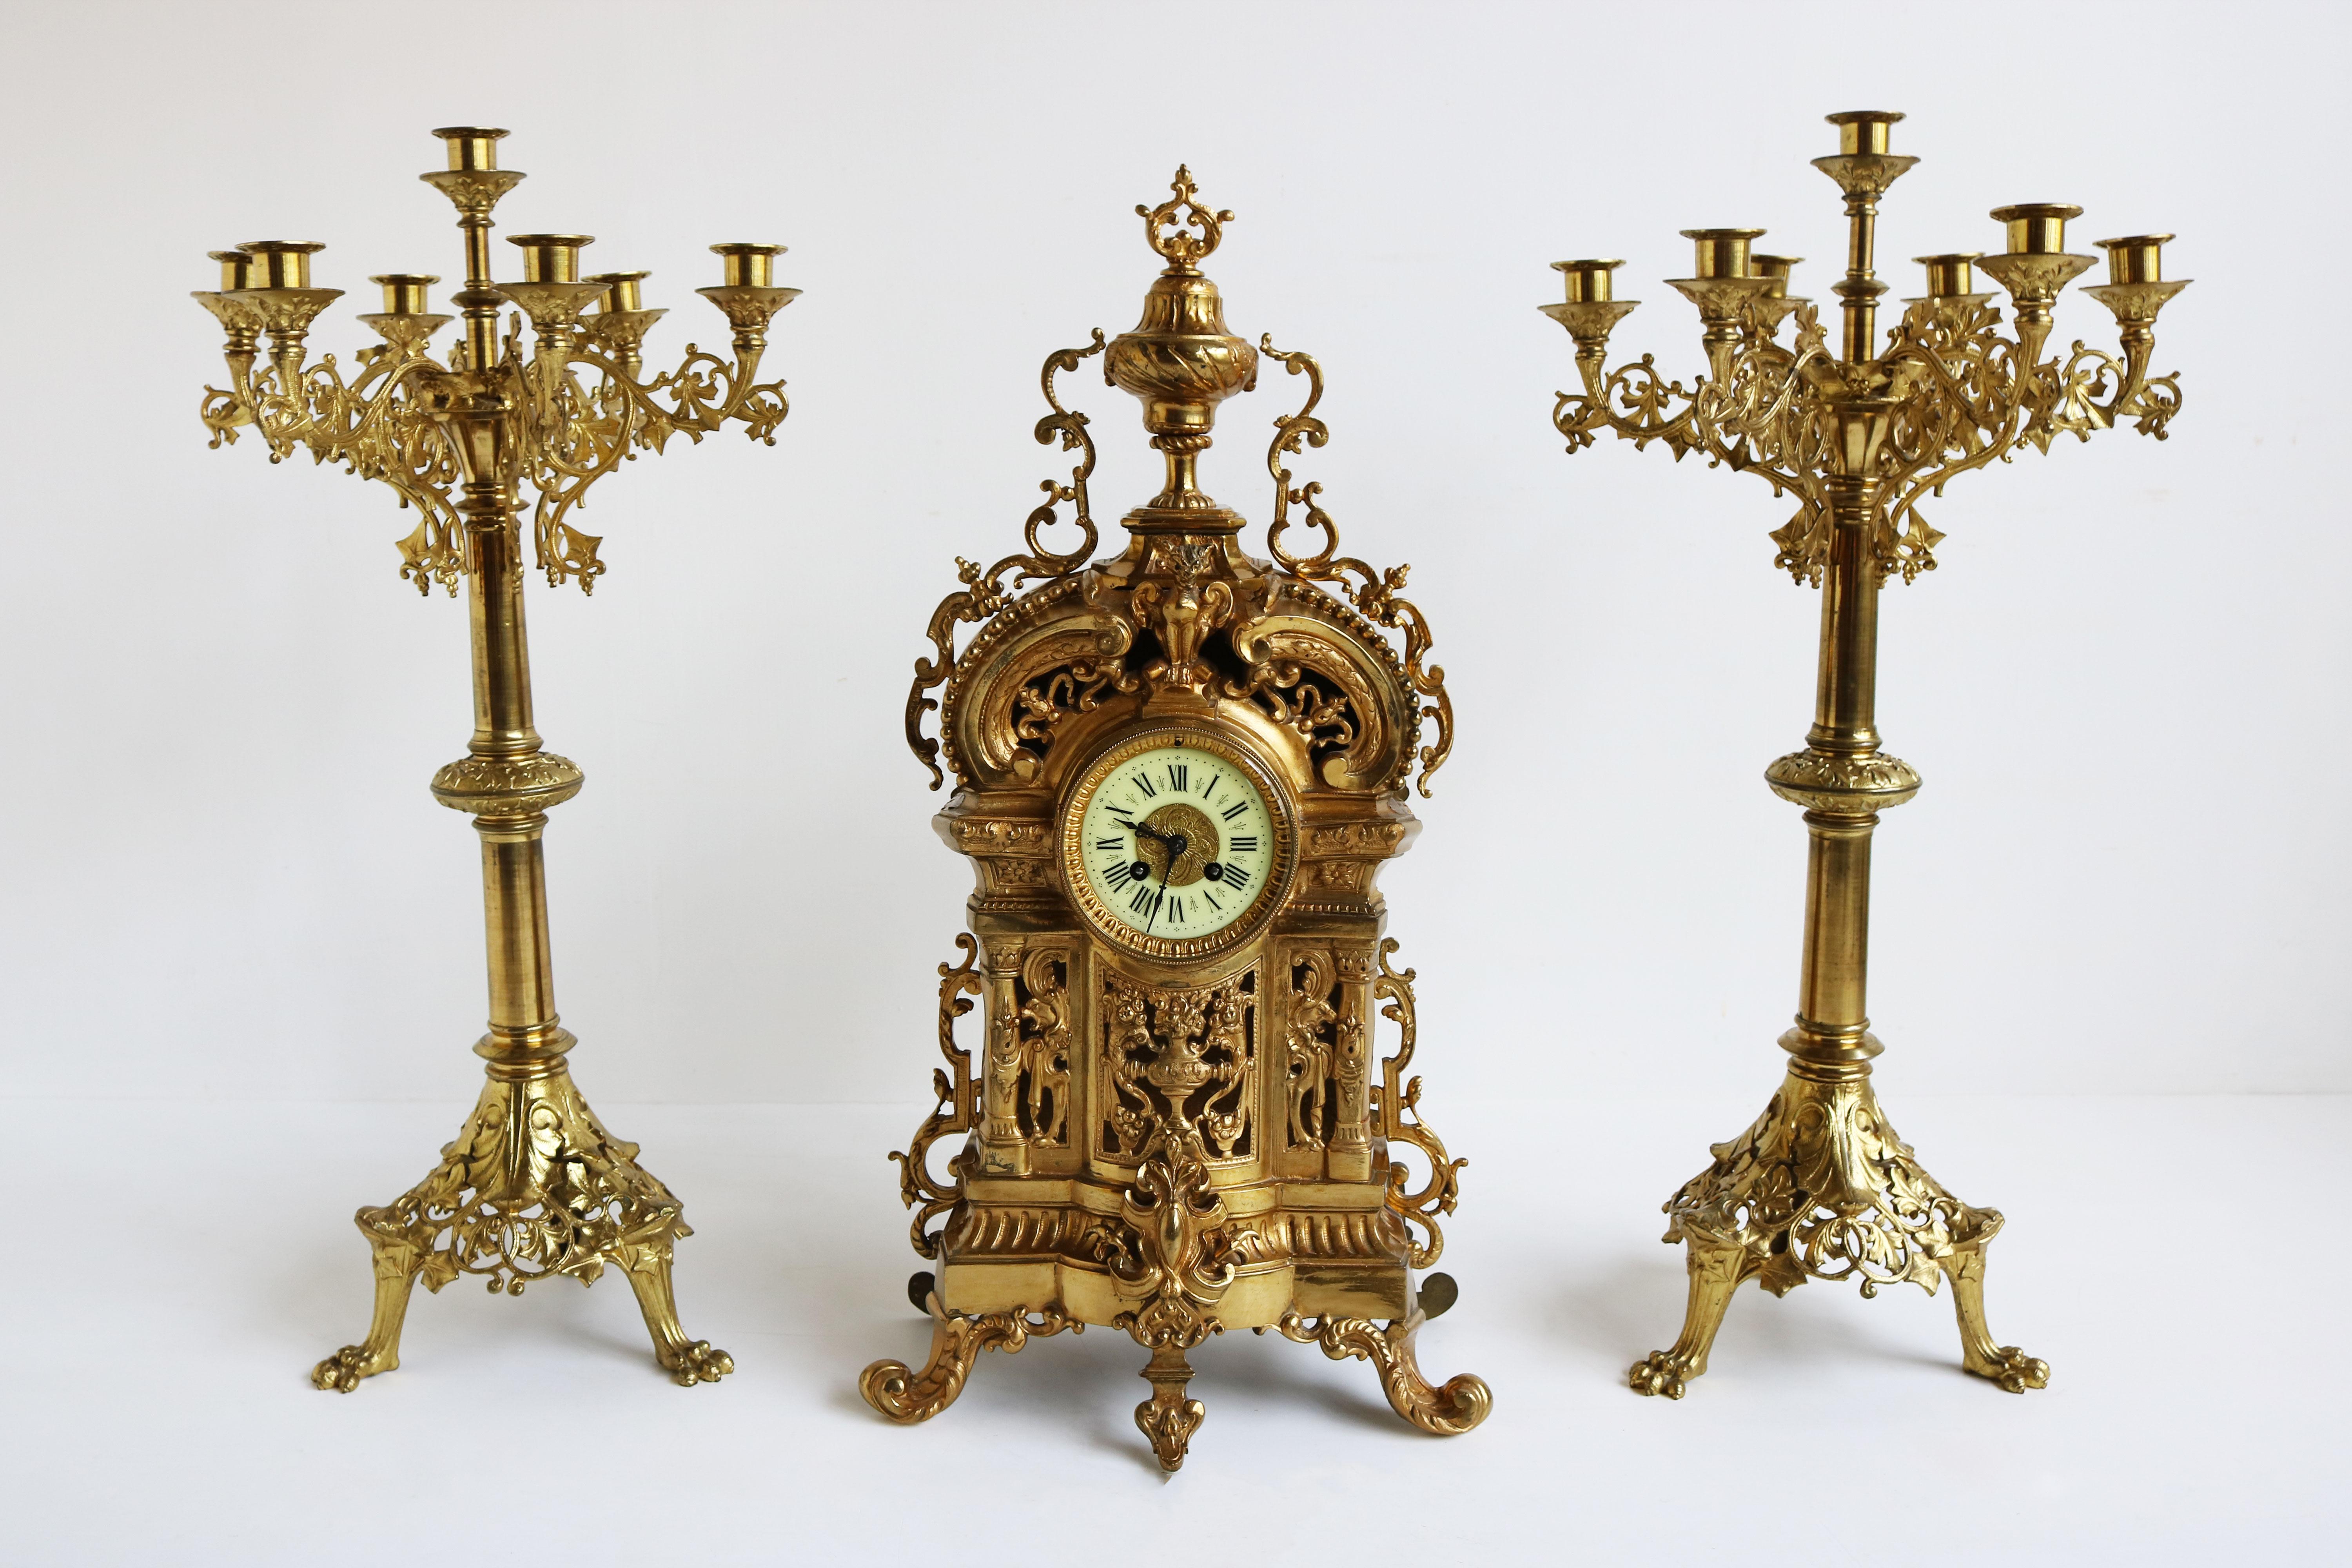 Beeindruckend ist dieses große antike klassische französische Uhrenset aus dem Frankreich des späten 19. Jahrhunderts. 
Die Kandelaber sind riesig und eindrucksvoll mit Akanthusblättern verziert. Sie haben Platz für 7 Kerzen. 
Die Uhr ist